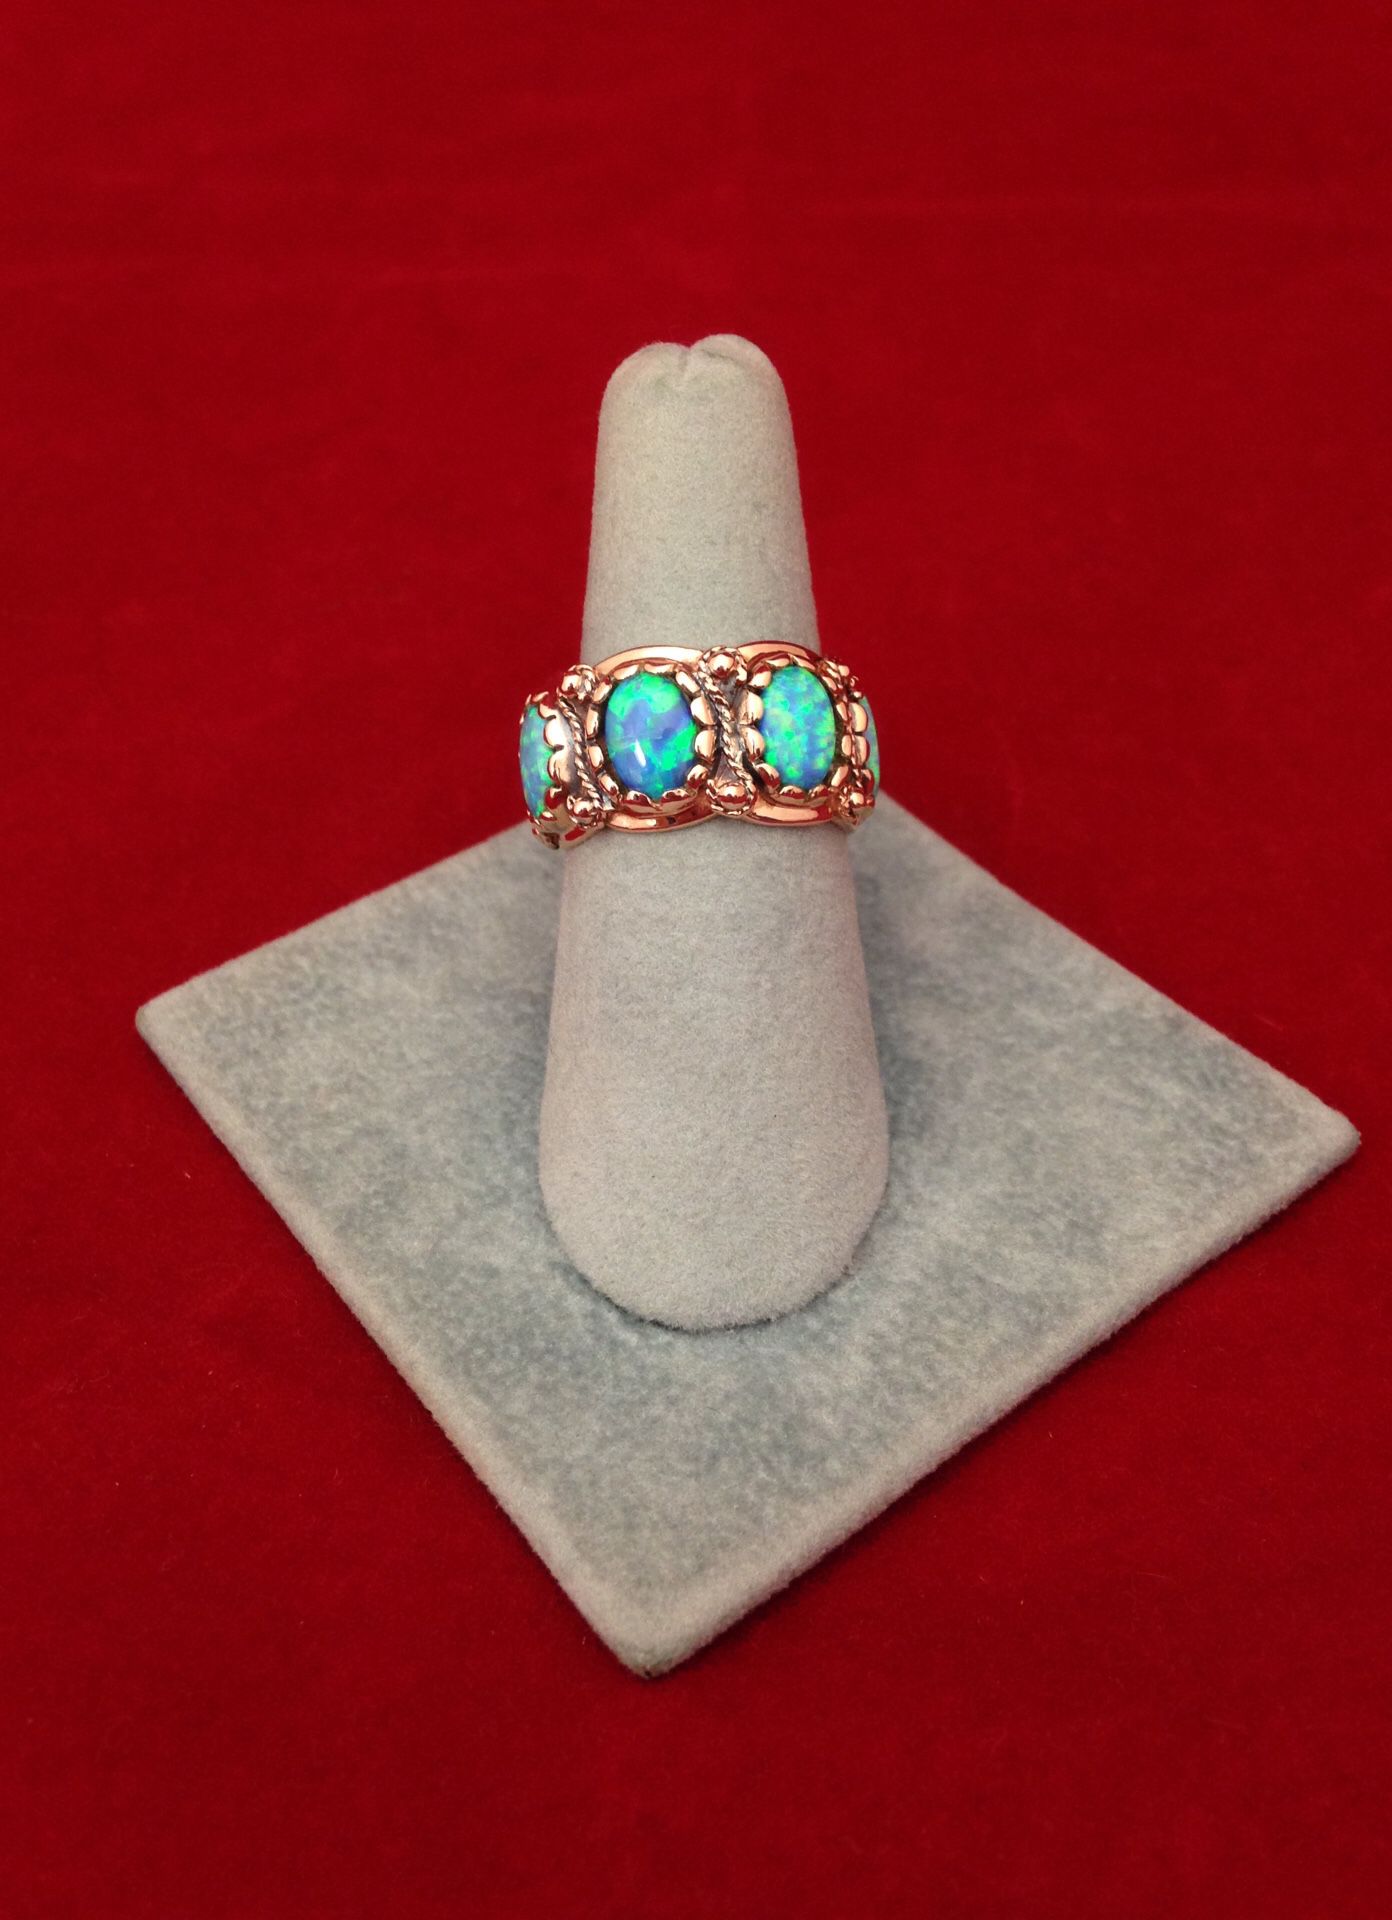 Fire opal ring